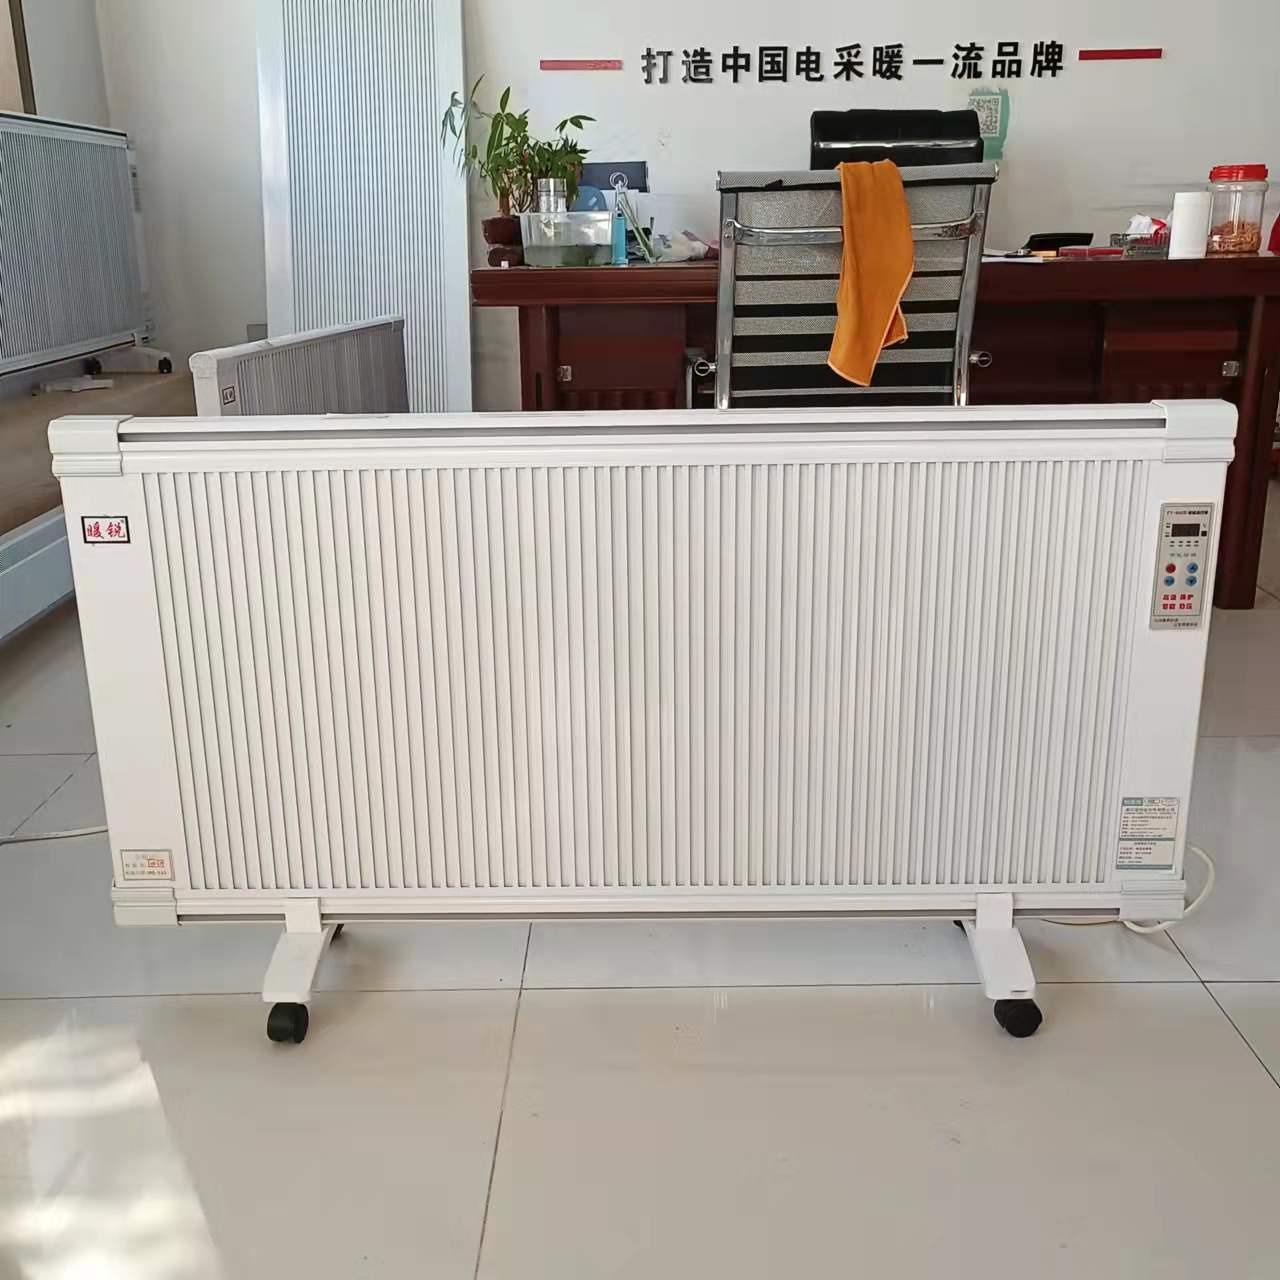 电暖器 碳纤维取暖器 暖硕 NS-2 碳晶电暖器 安装挂式电暖器欢迎选购